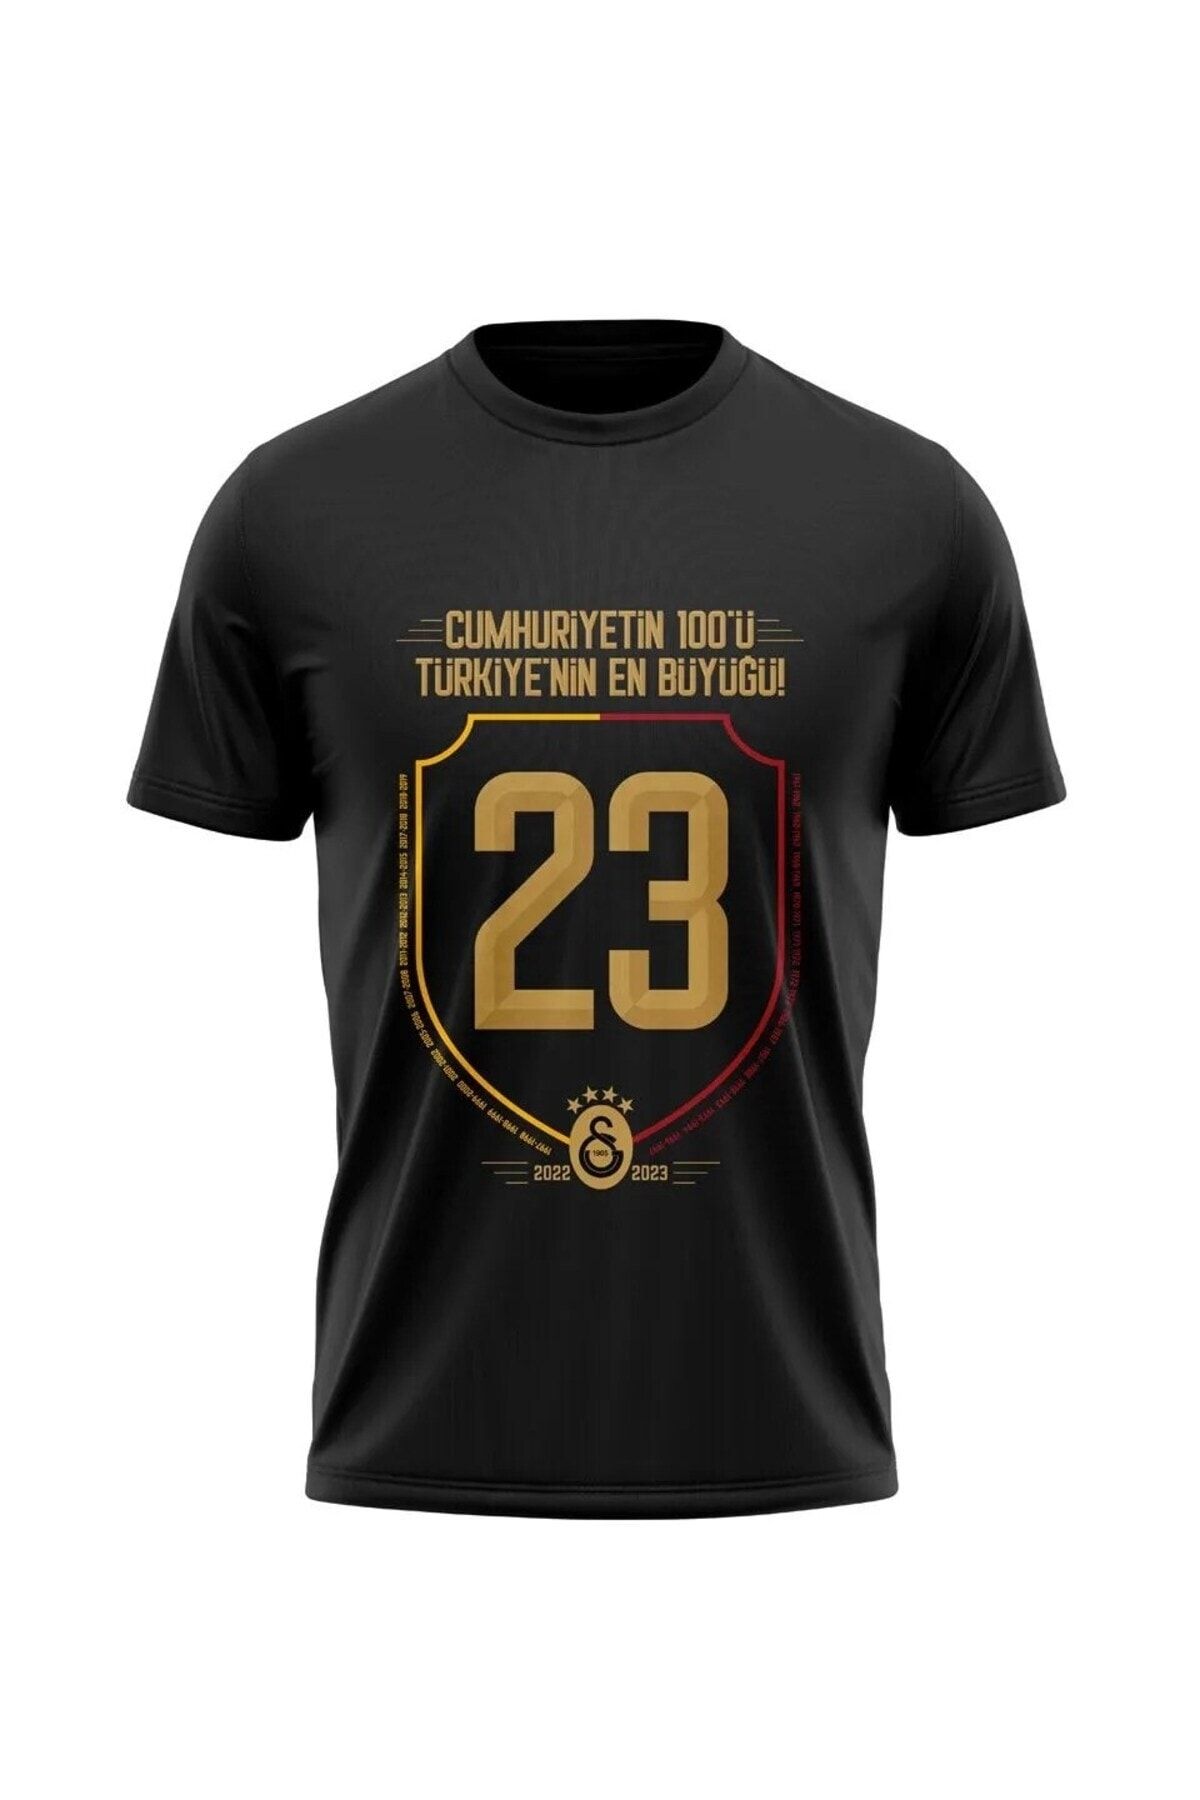 Galatasaray Lisanslı 2023 Şampiyonluk T-Shirt